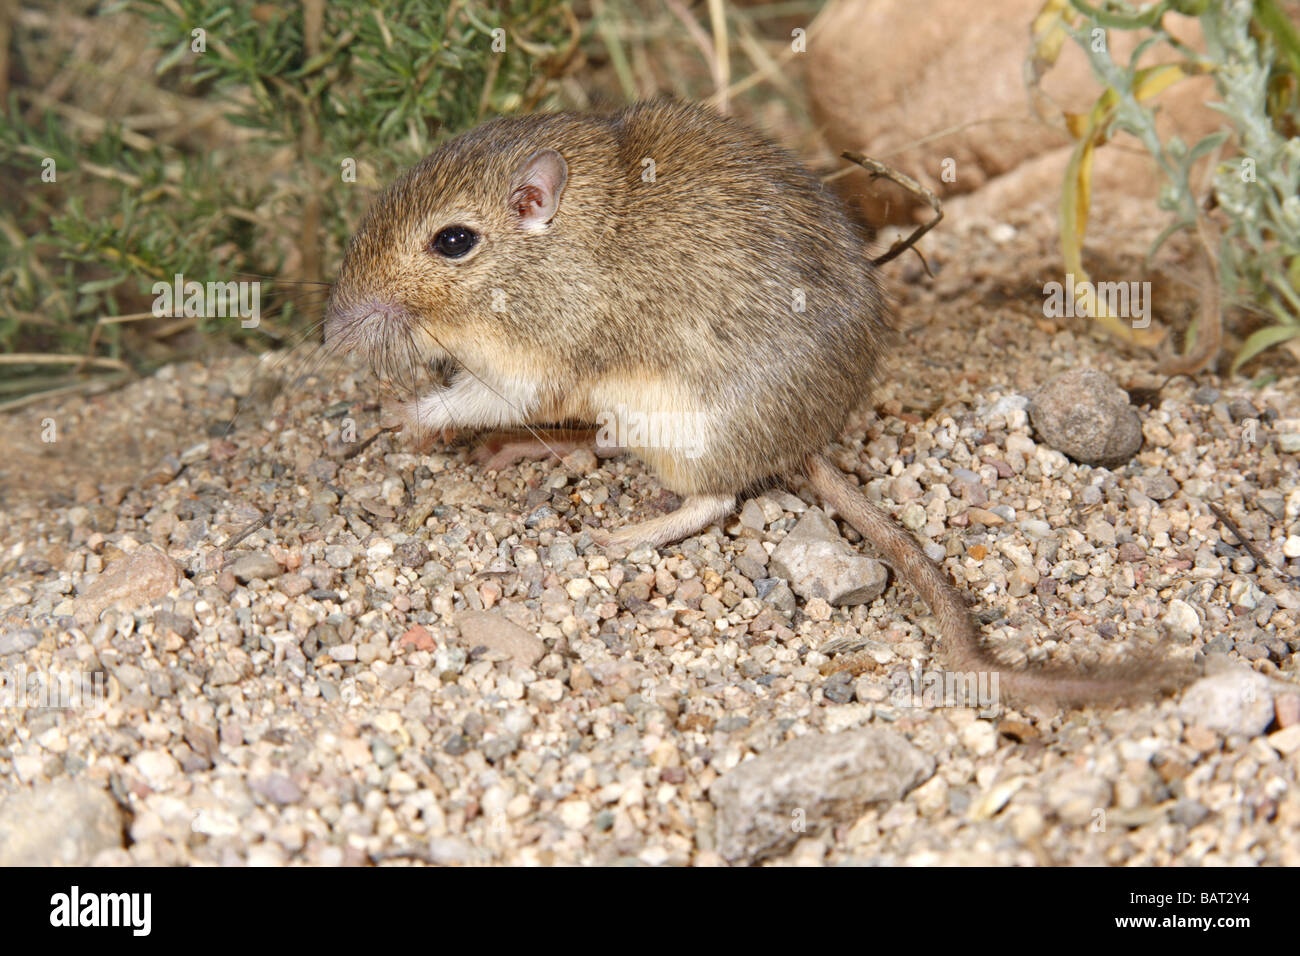 Wüste Tasche Maus sucht nach Samen in Wüste Kies. Stockfoto